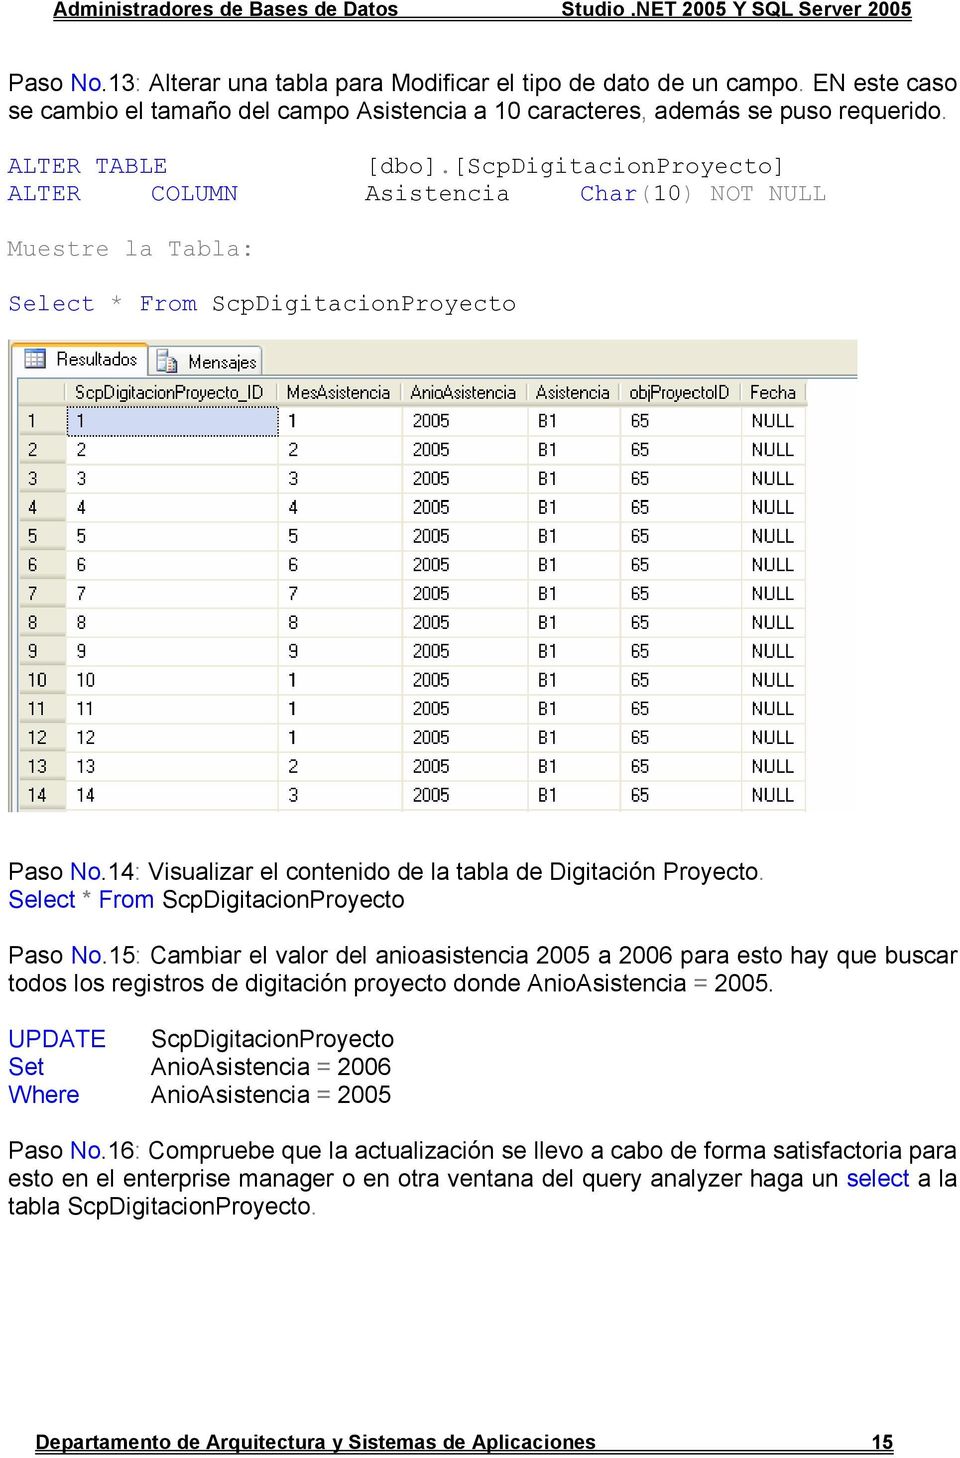 Select * From ScpDigitacionProyecto Paso No.15: Cambiar el valor del anioasistencia 2005 a 2006 para esto hay que buscar todos los registros de digitación proyecto donde AnioAsistencia = 2005.